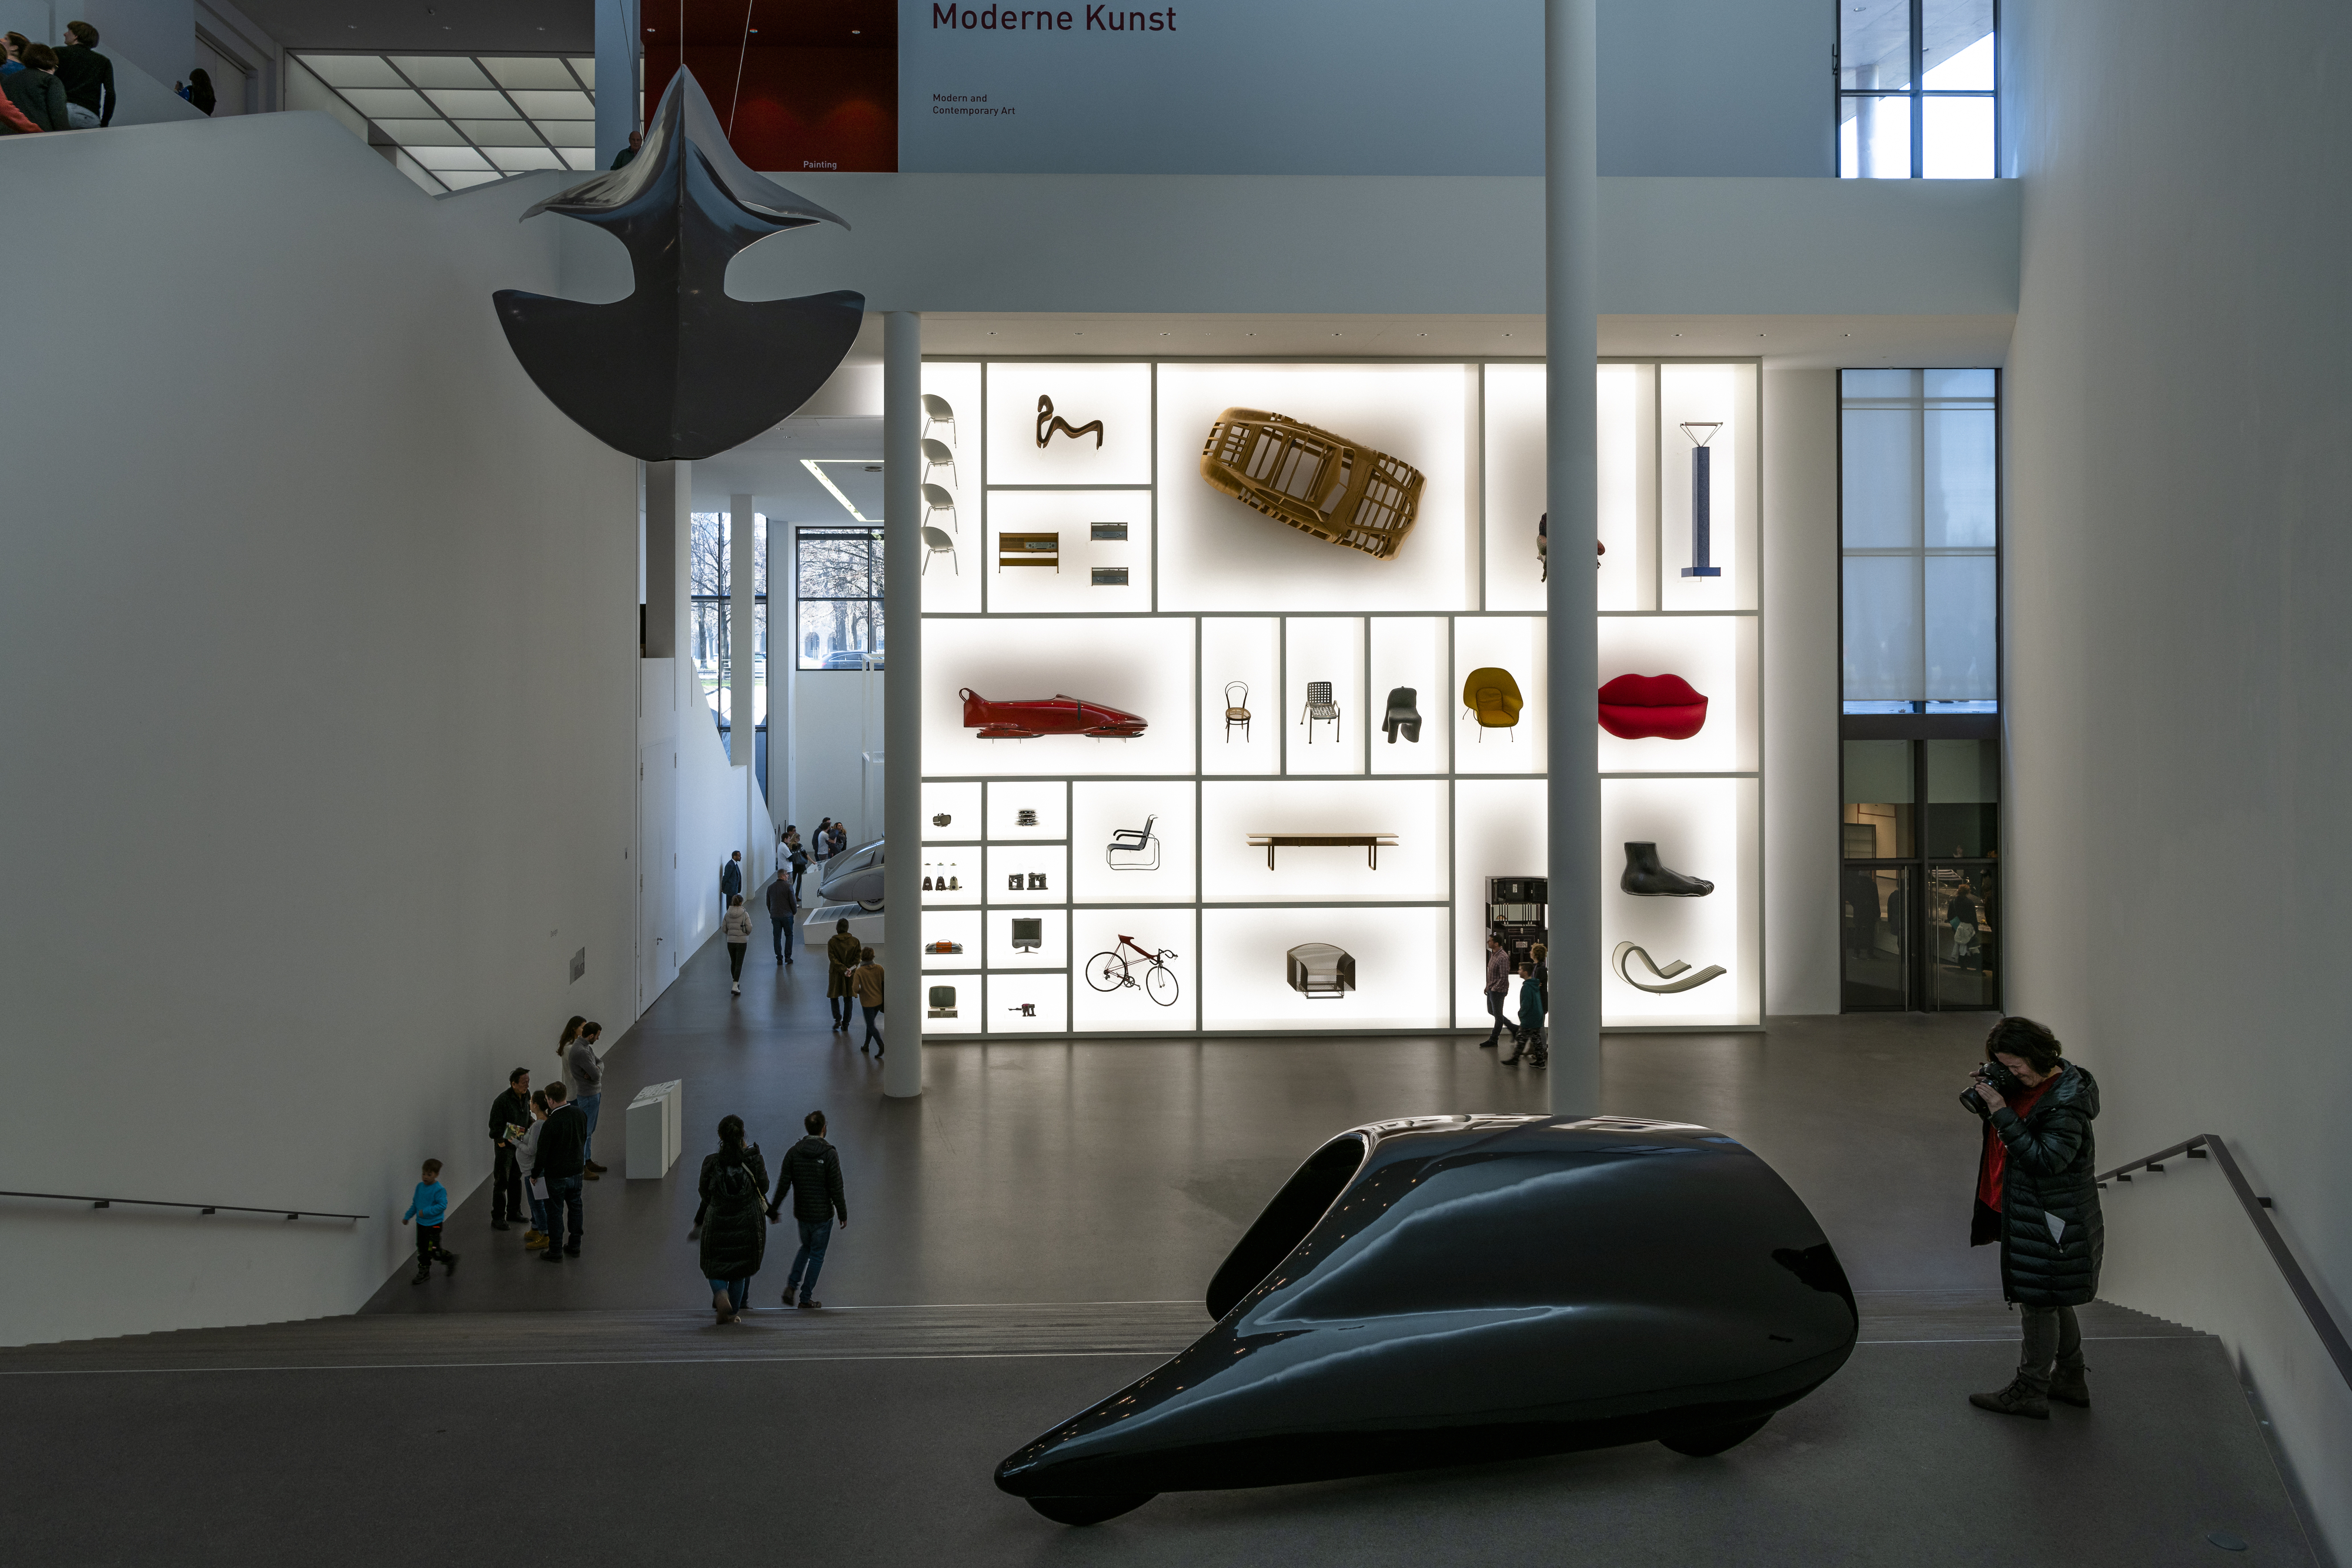 독일 뮌헨에 있는 박물관 지구에서는 인류의 예술사를 산책할 수 있다. 모데르네 피나코테크에서는 자동차는 물론 수많은 가구들의 디자인 역사까지 한눈에 만난다. 이승원 작가 제공